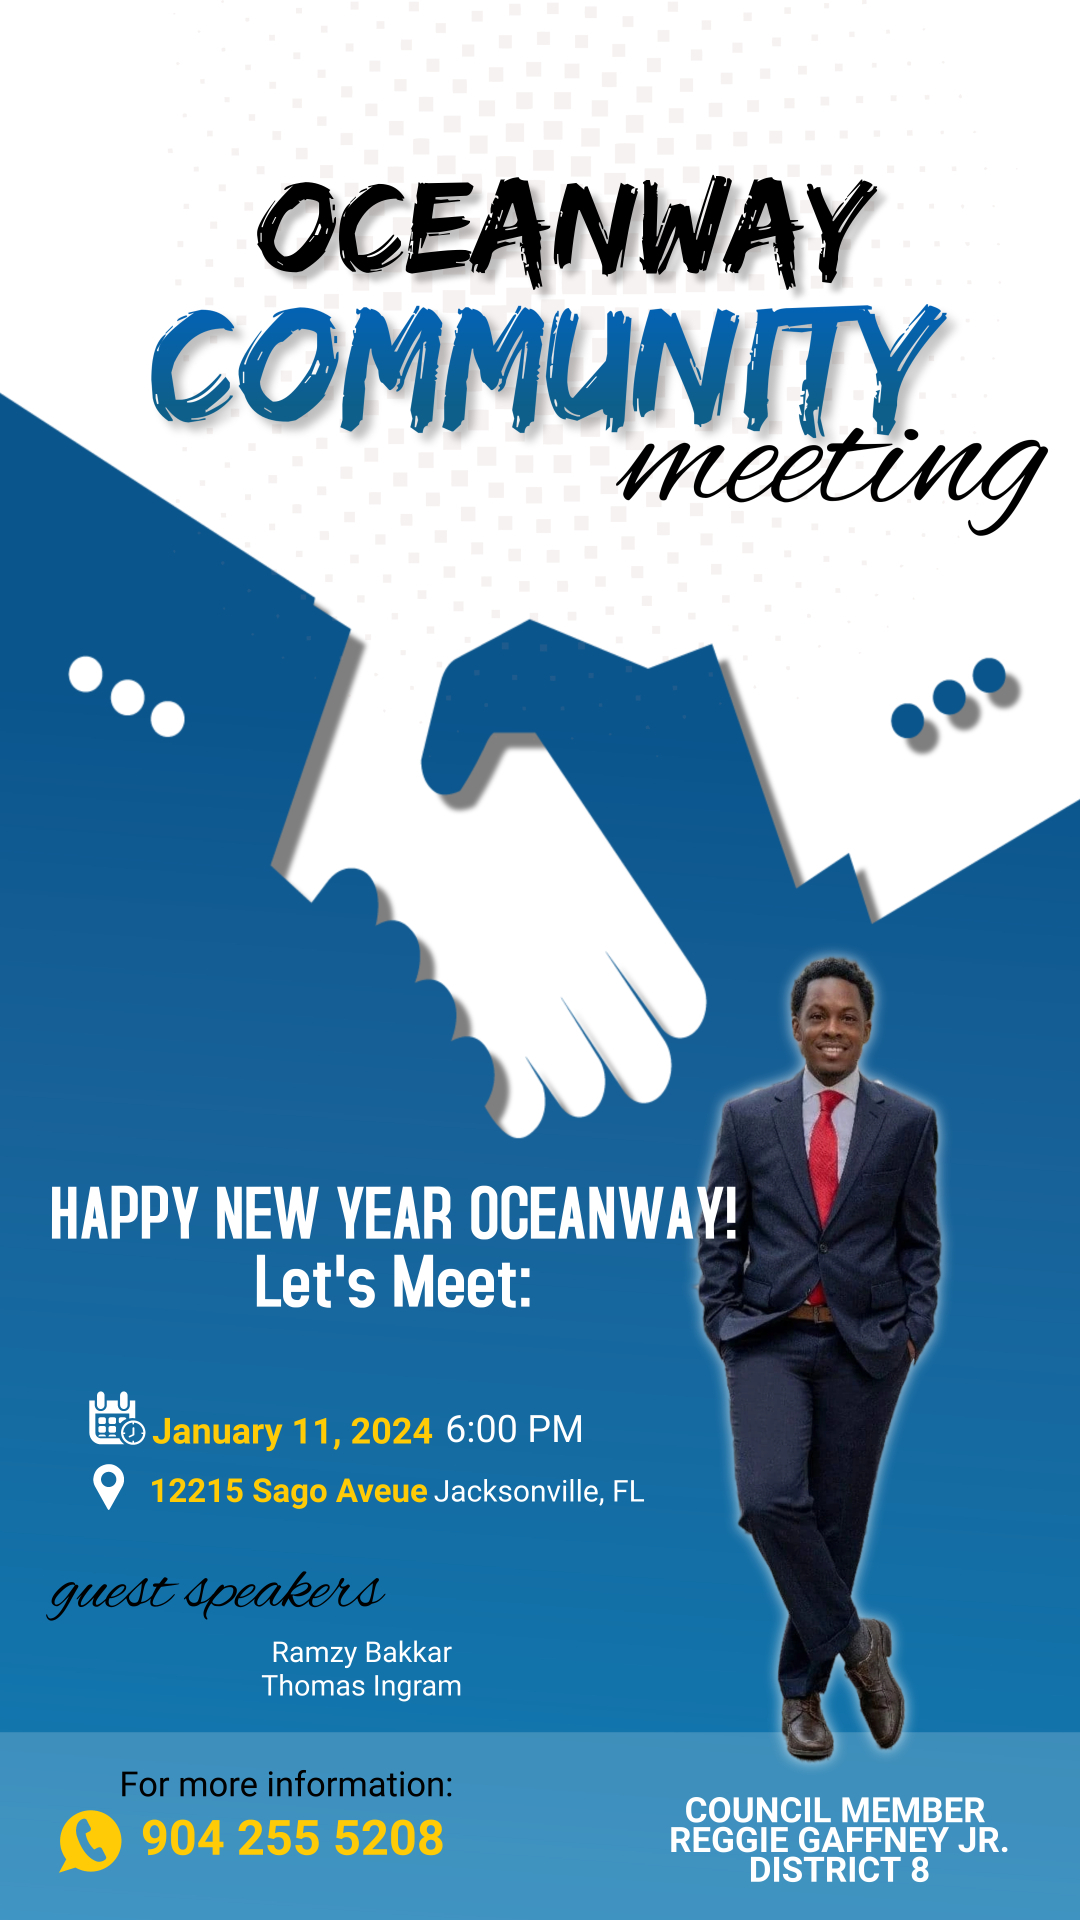 CM-Reggie-Gaffney-Jr-January-11-2024-Oceanway-Community-Meeting.jpg